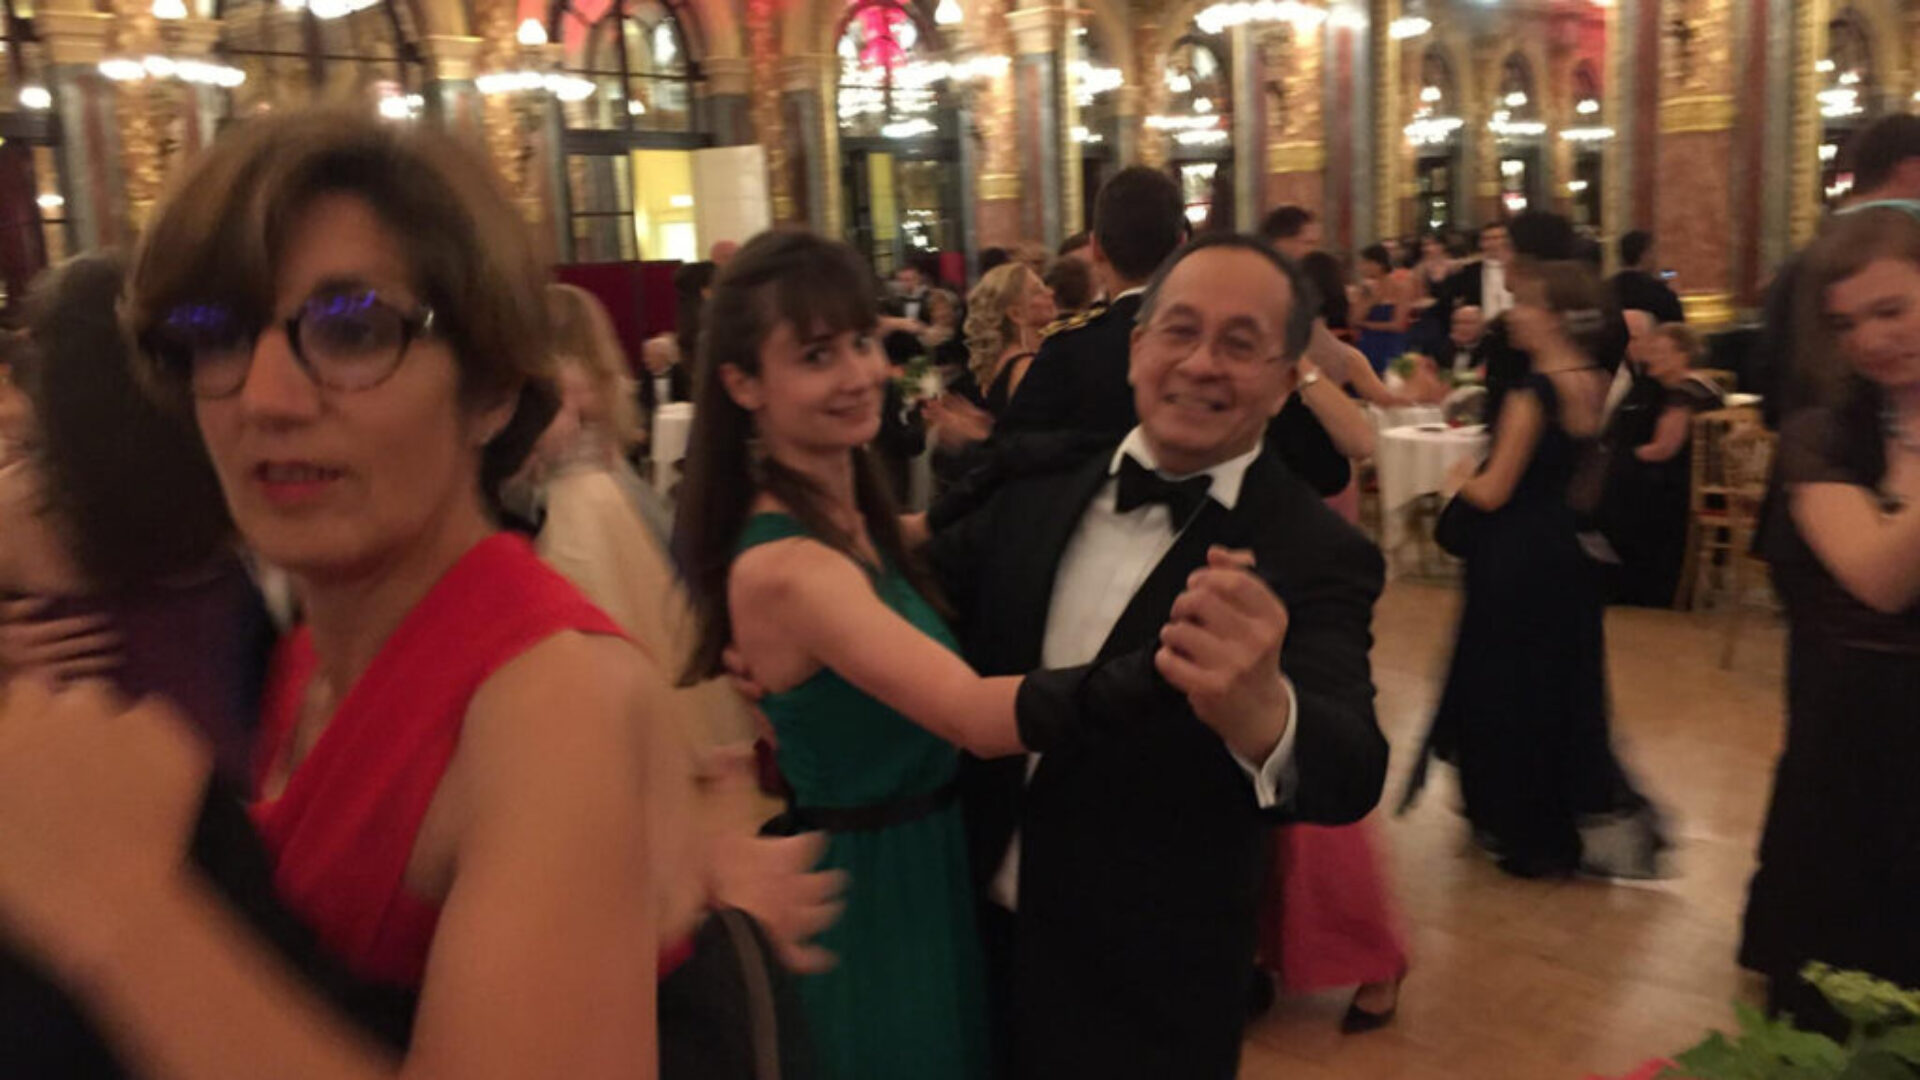 Bal des Parisiennes 2017 - Viennese Ball of Paris